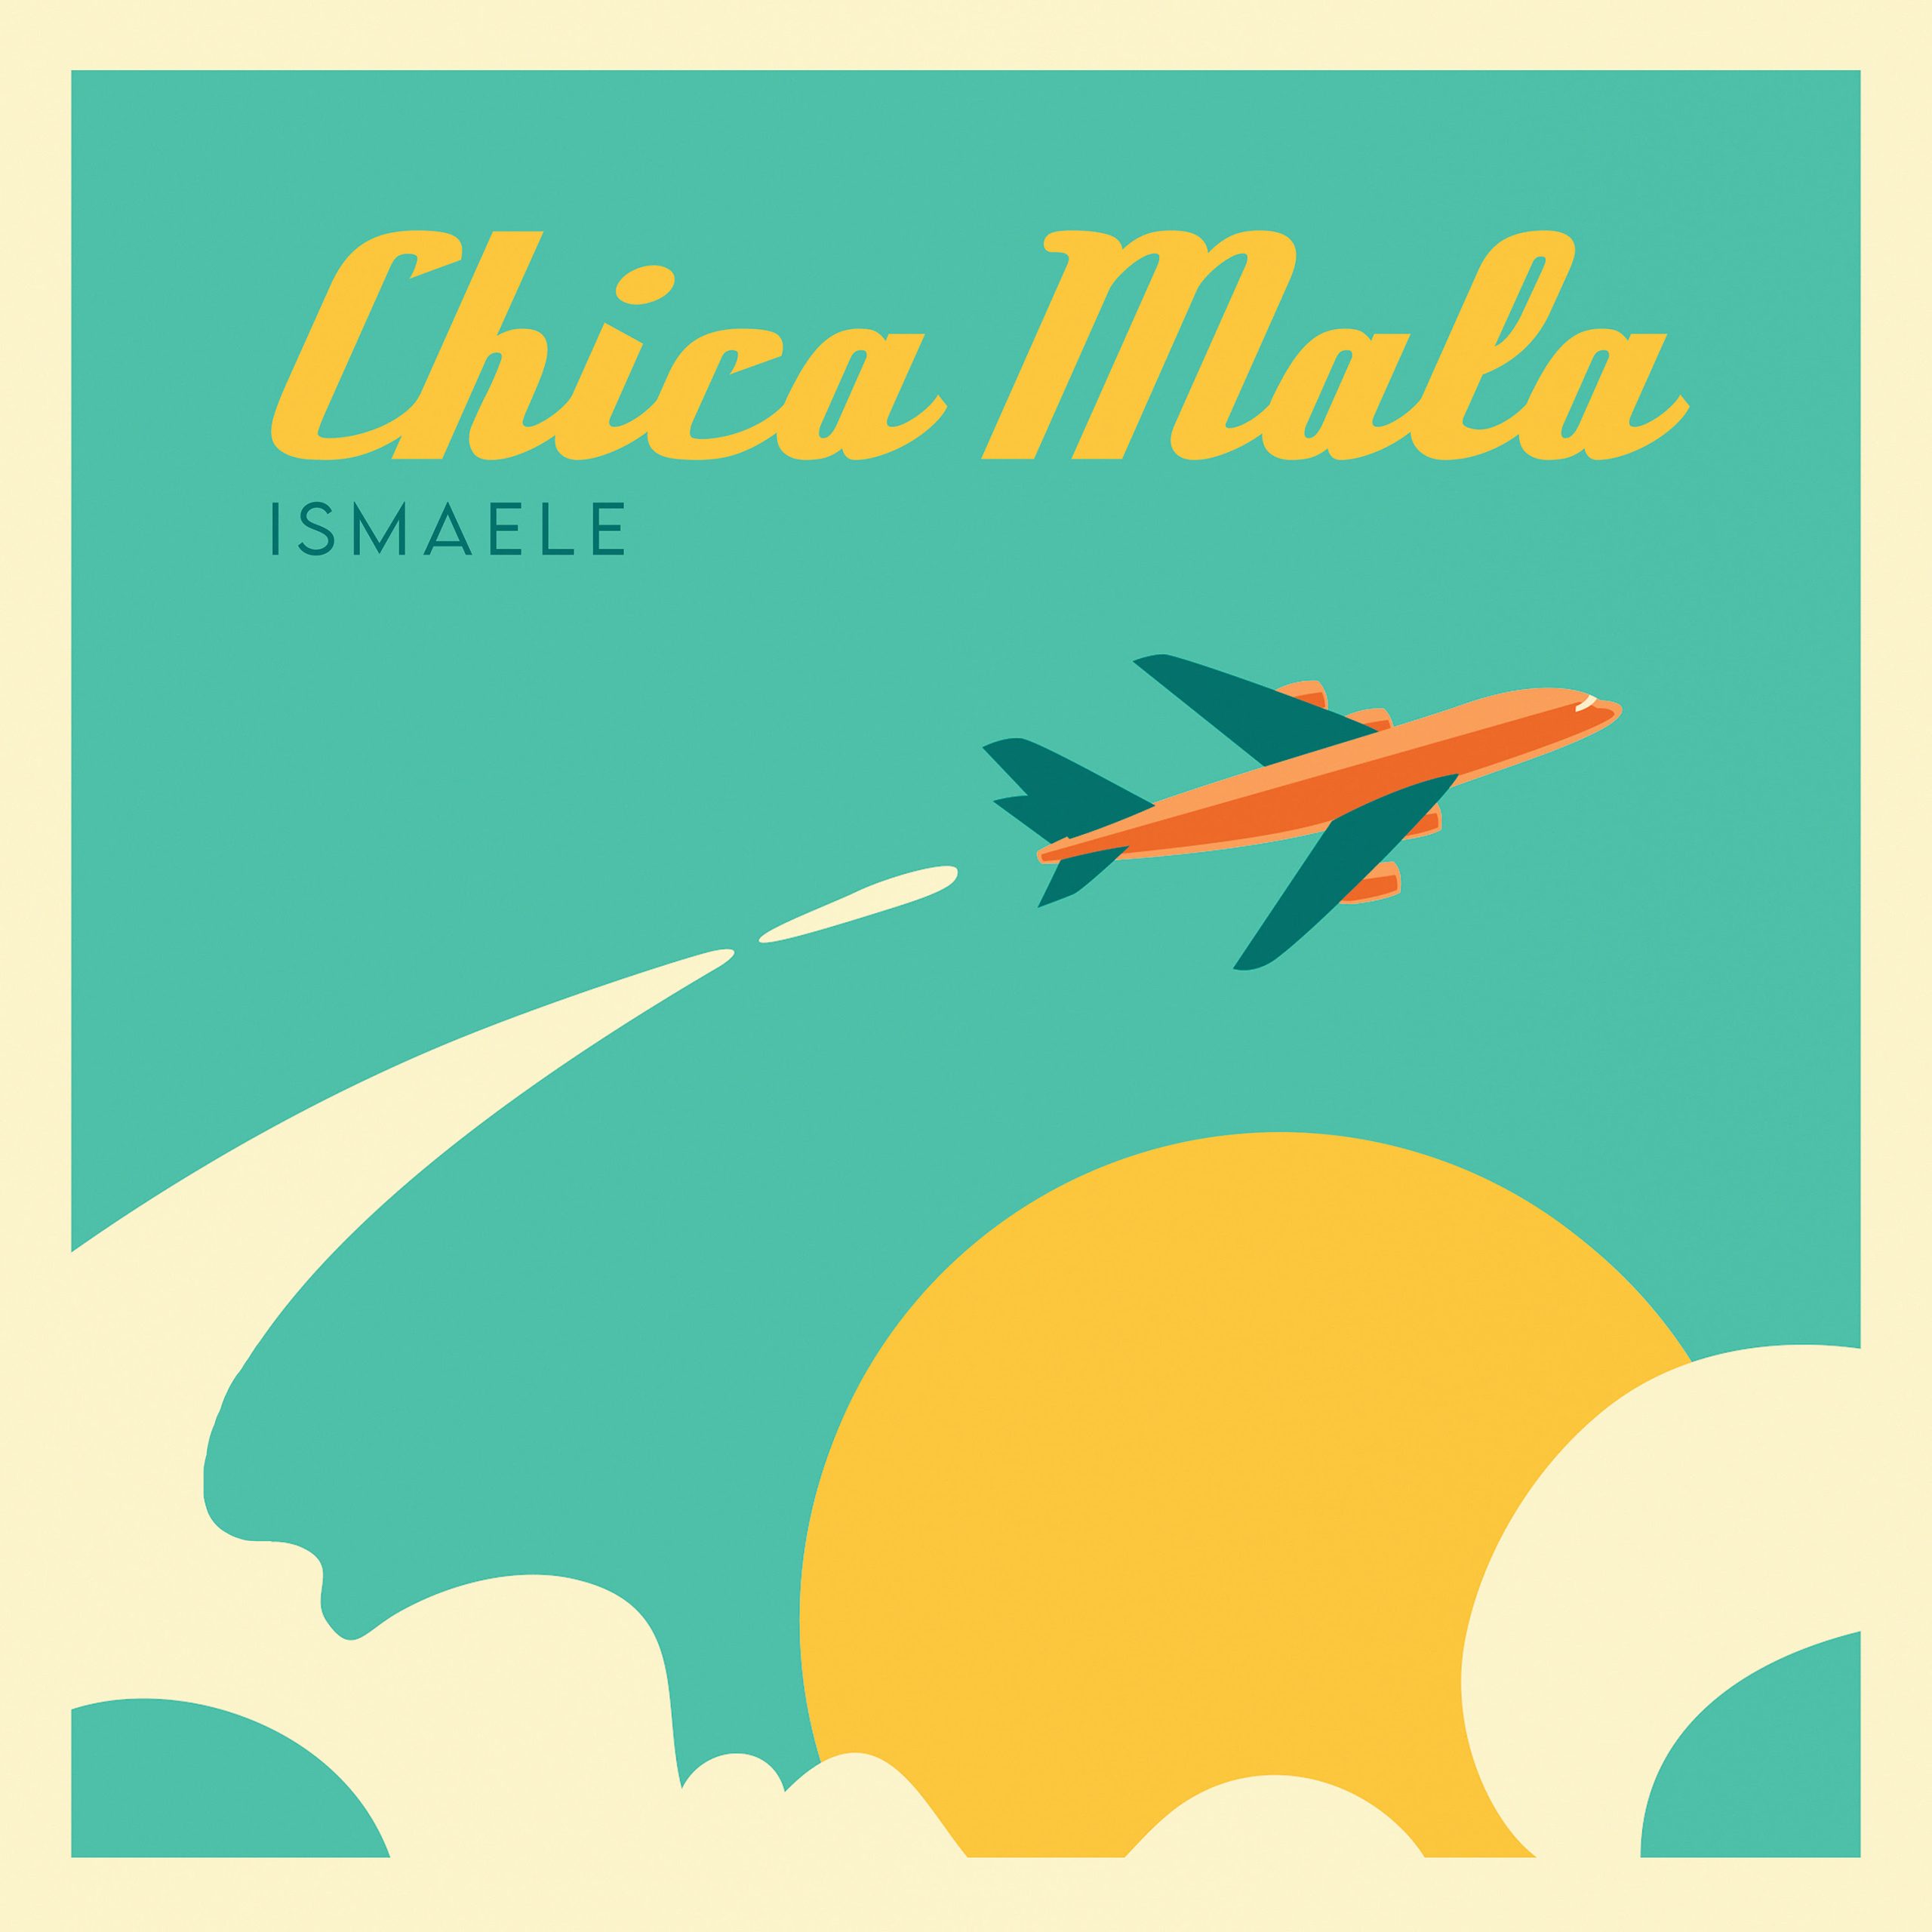 Chica Mala, Ismaele torna in radio col nuovo singolo dal 15 luglio